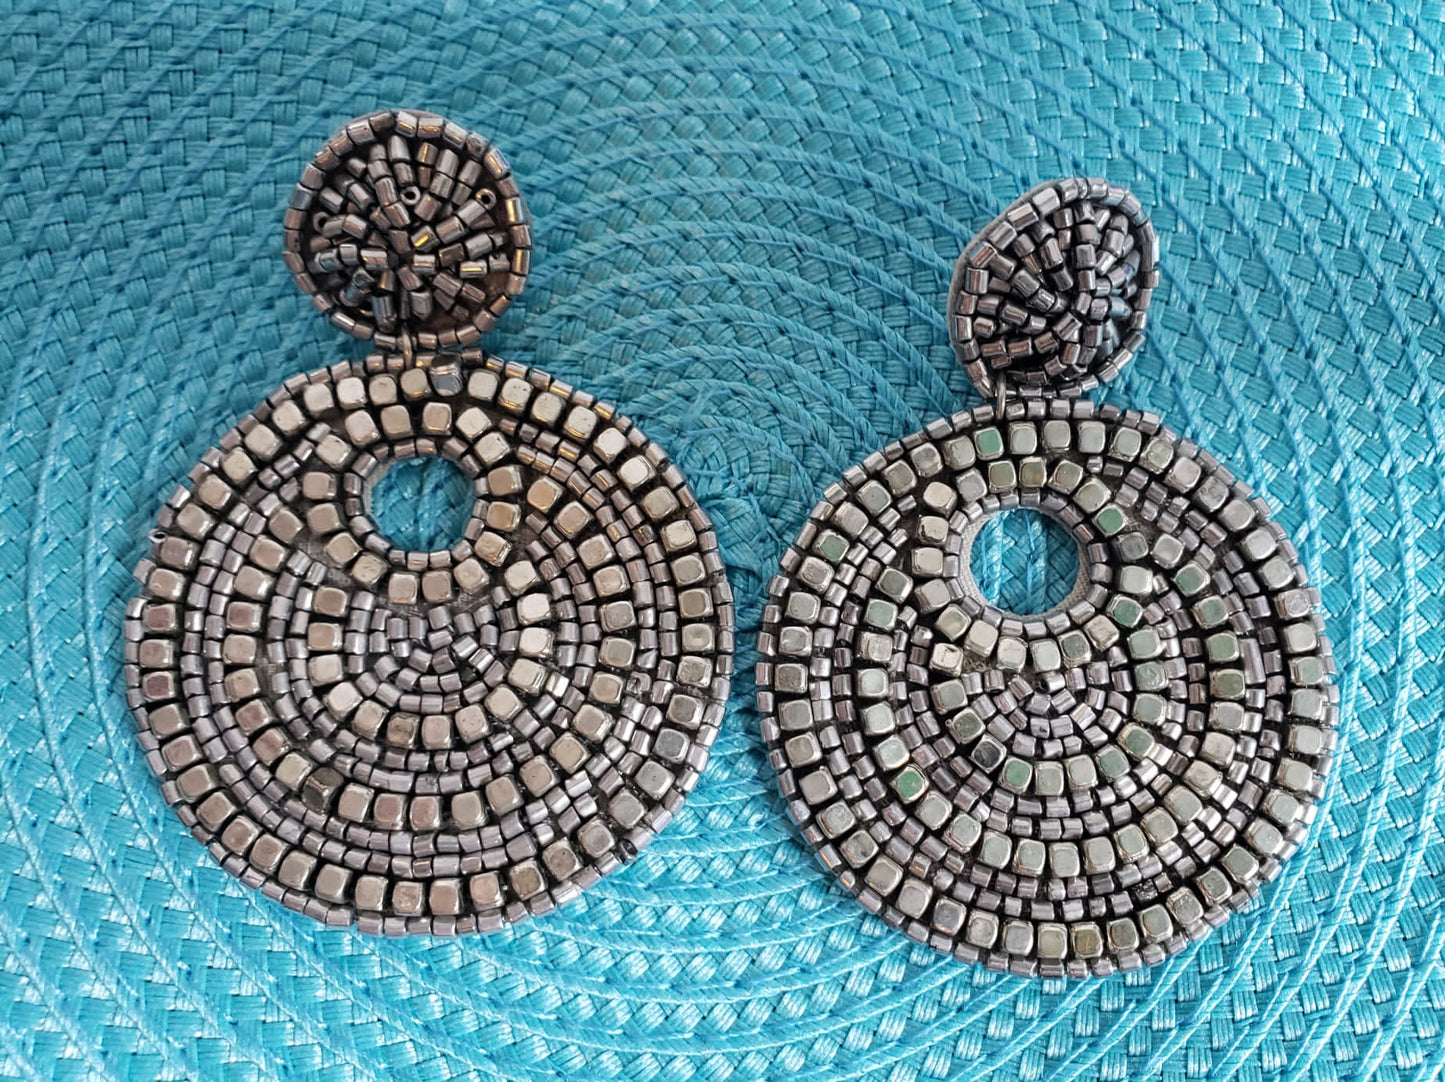 Gypsy Earrings